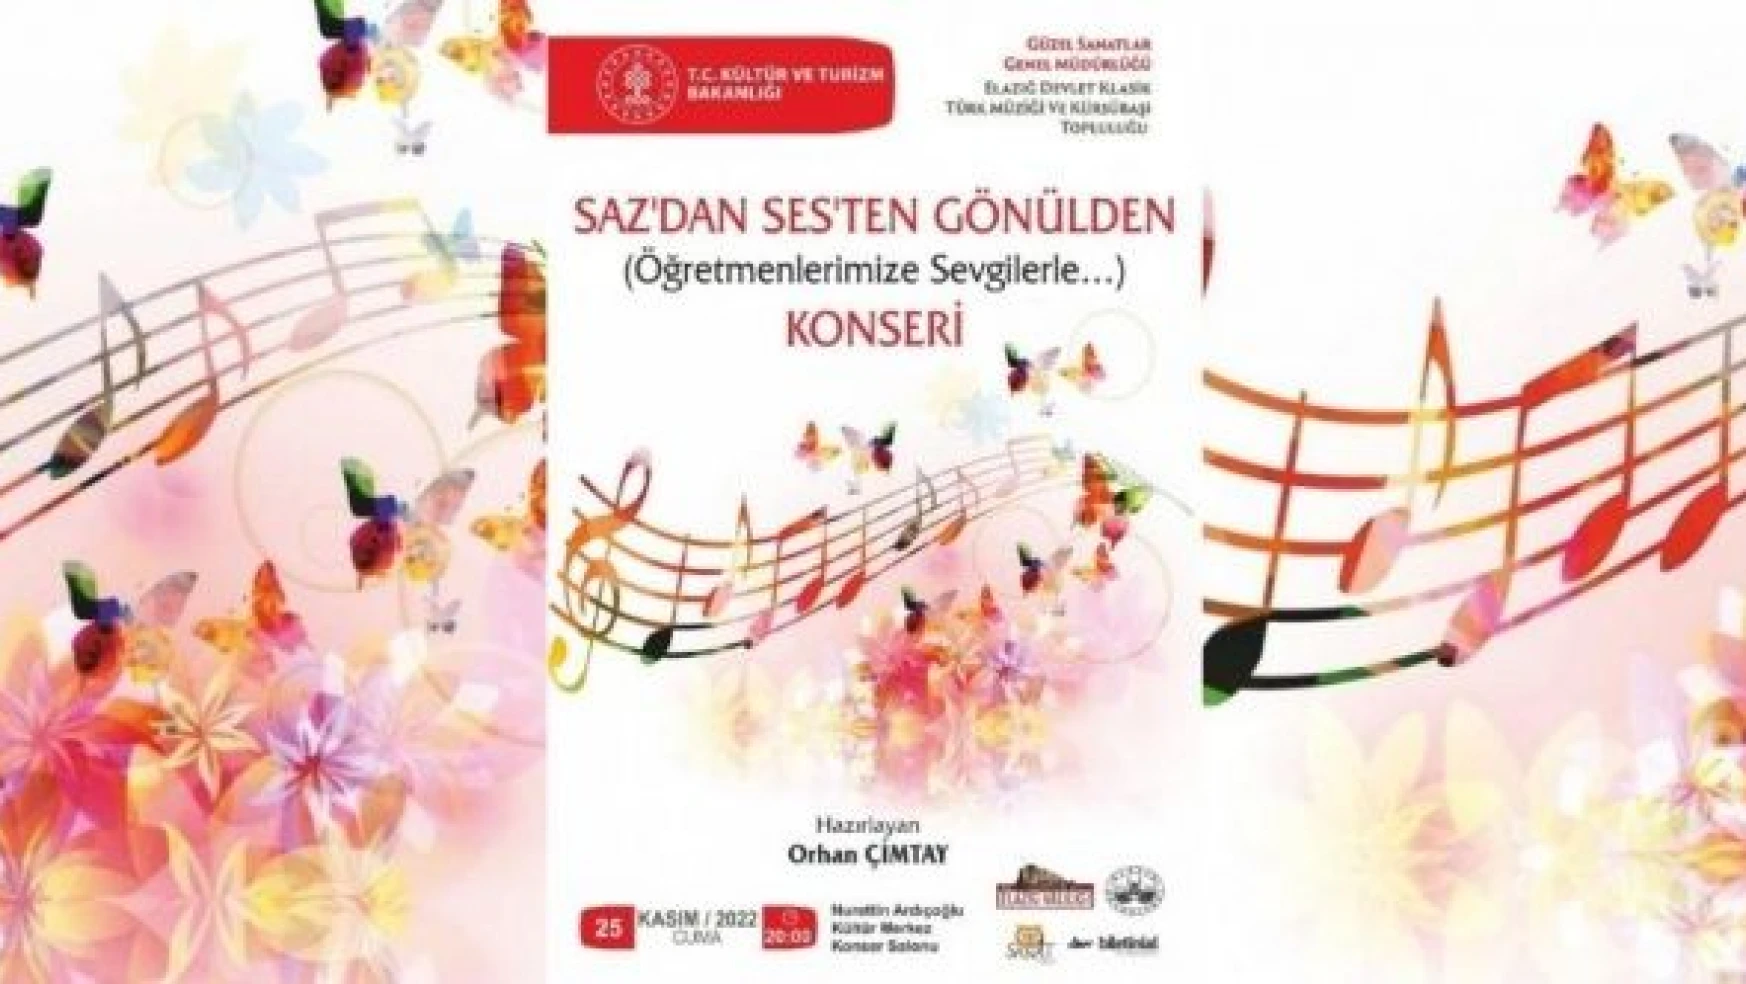 Elazığ'da 'Sazdan, Sesten, Gönülden' konseri düzenlenecek